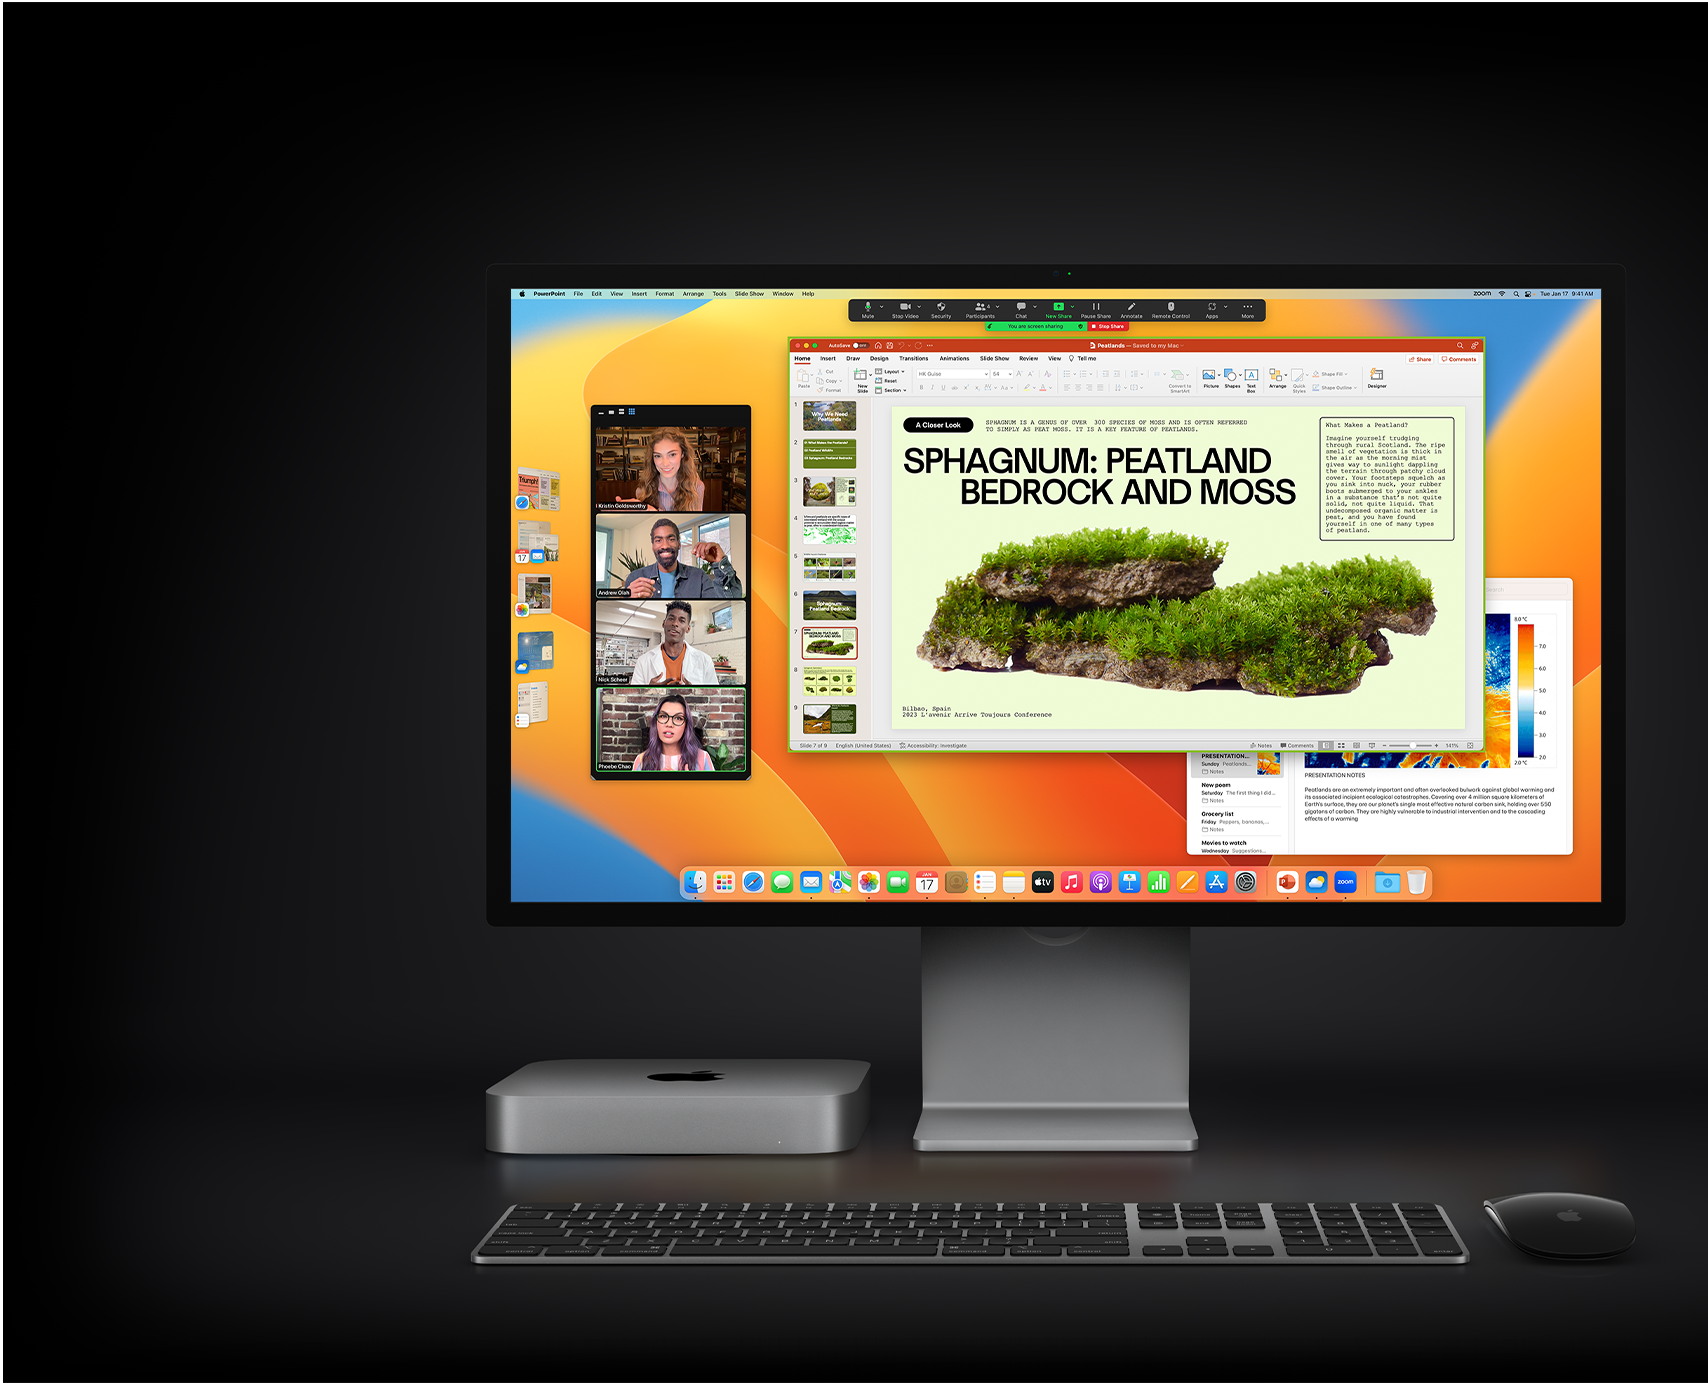 Mac mini med Magic Mouse, Magic Keyboard och Studio Display. På skärmen syns en Microsoft PowerPoint-presentation som delas i ett Zoom-möte, samt appen Anteckningar i bakgrunden.